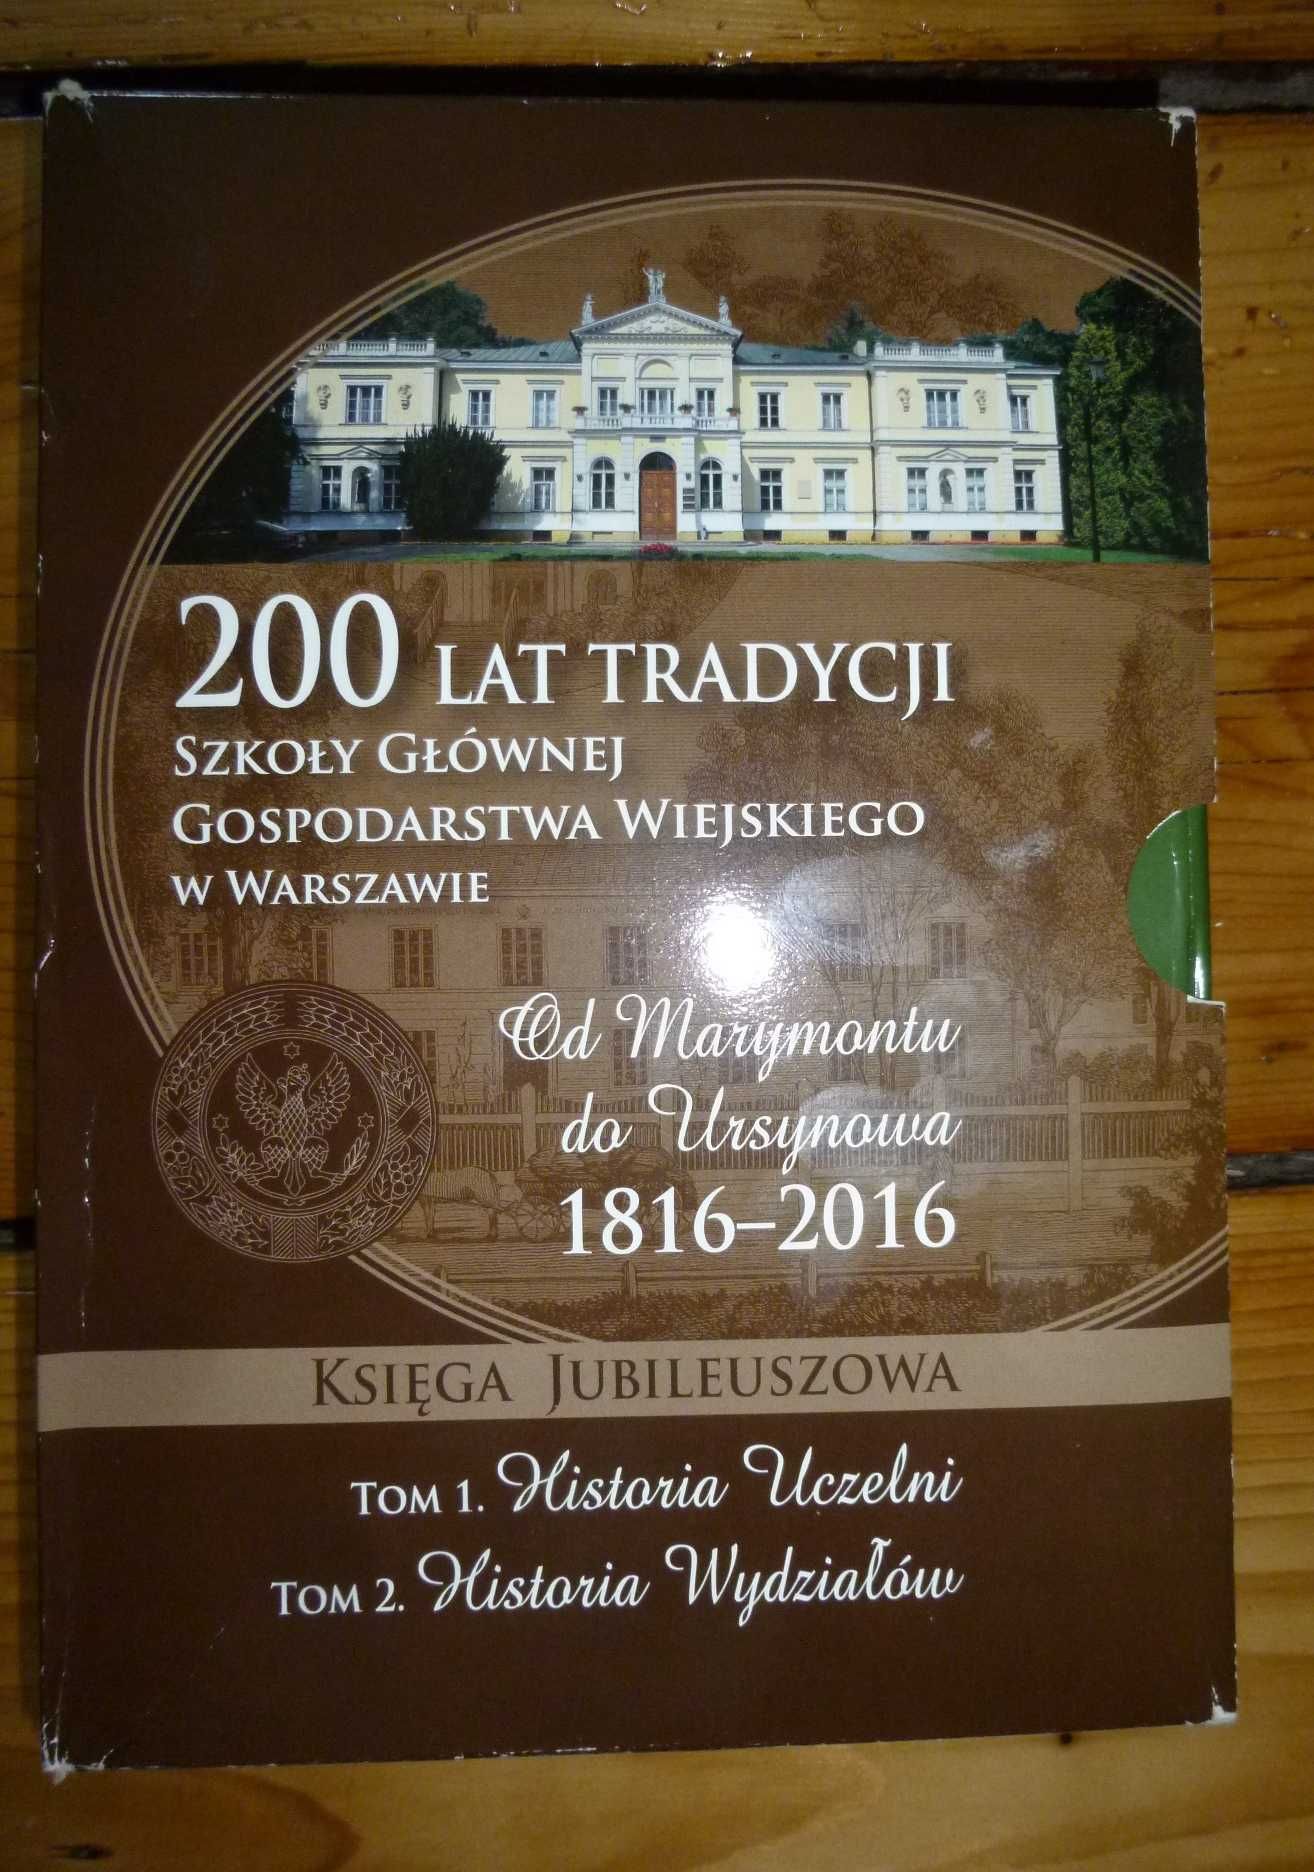 200 lat tradycji SGGW 1816- 2016 -2 tomy, nowe